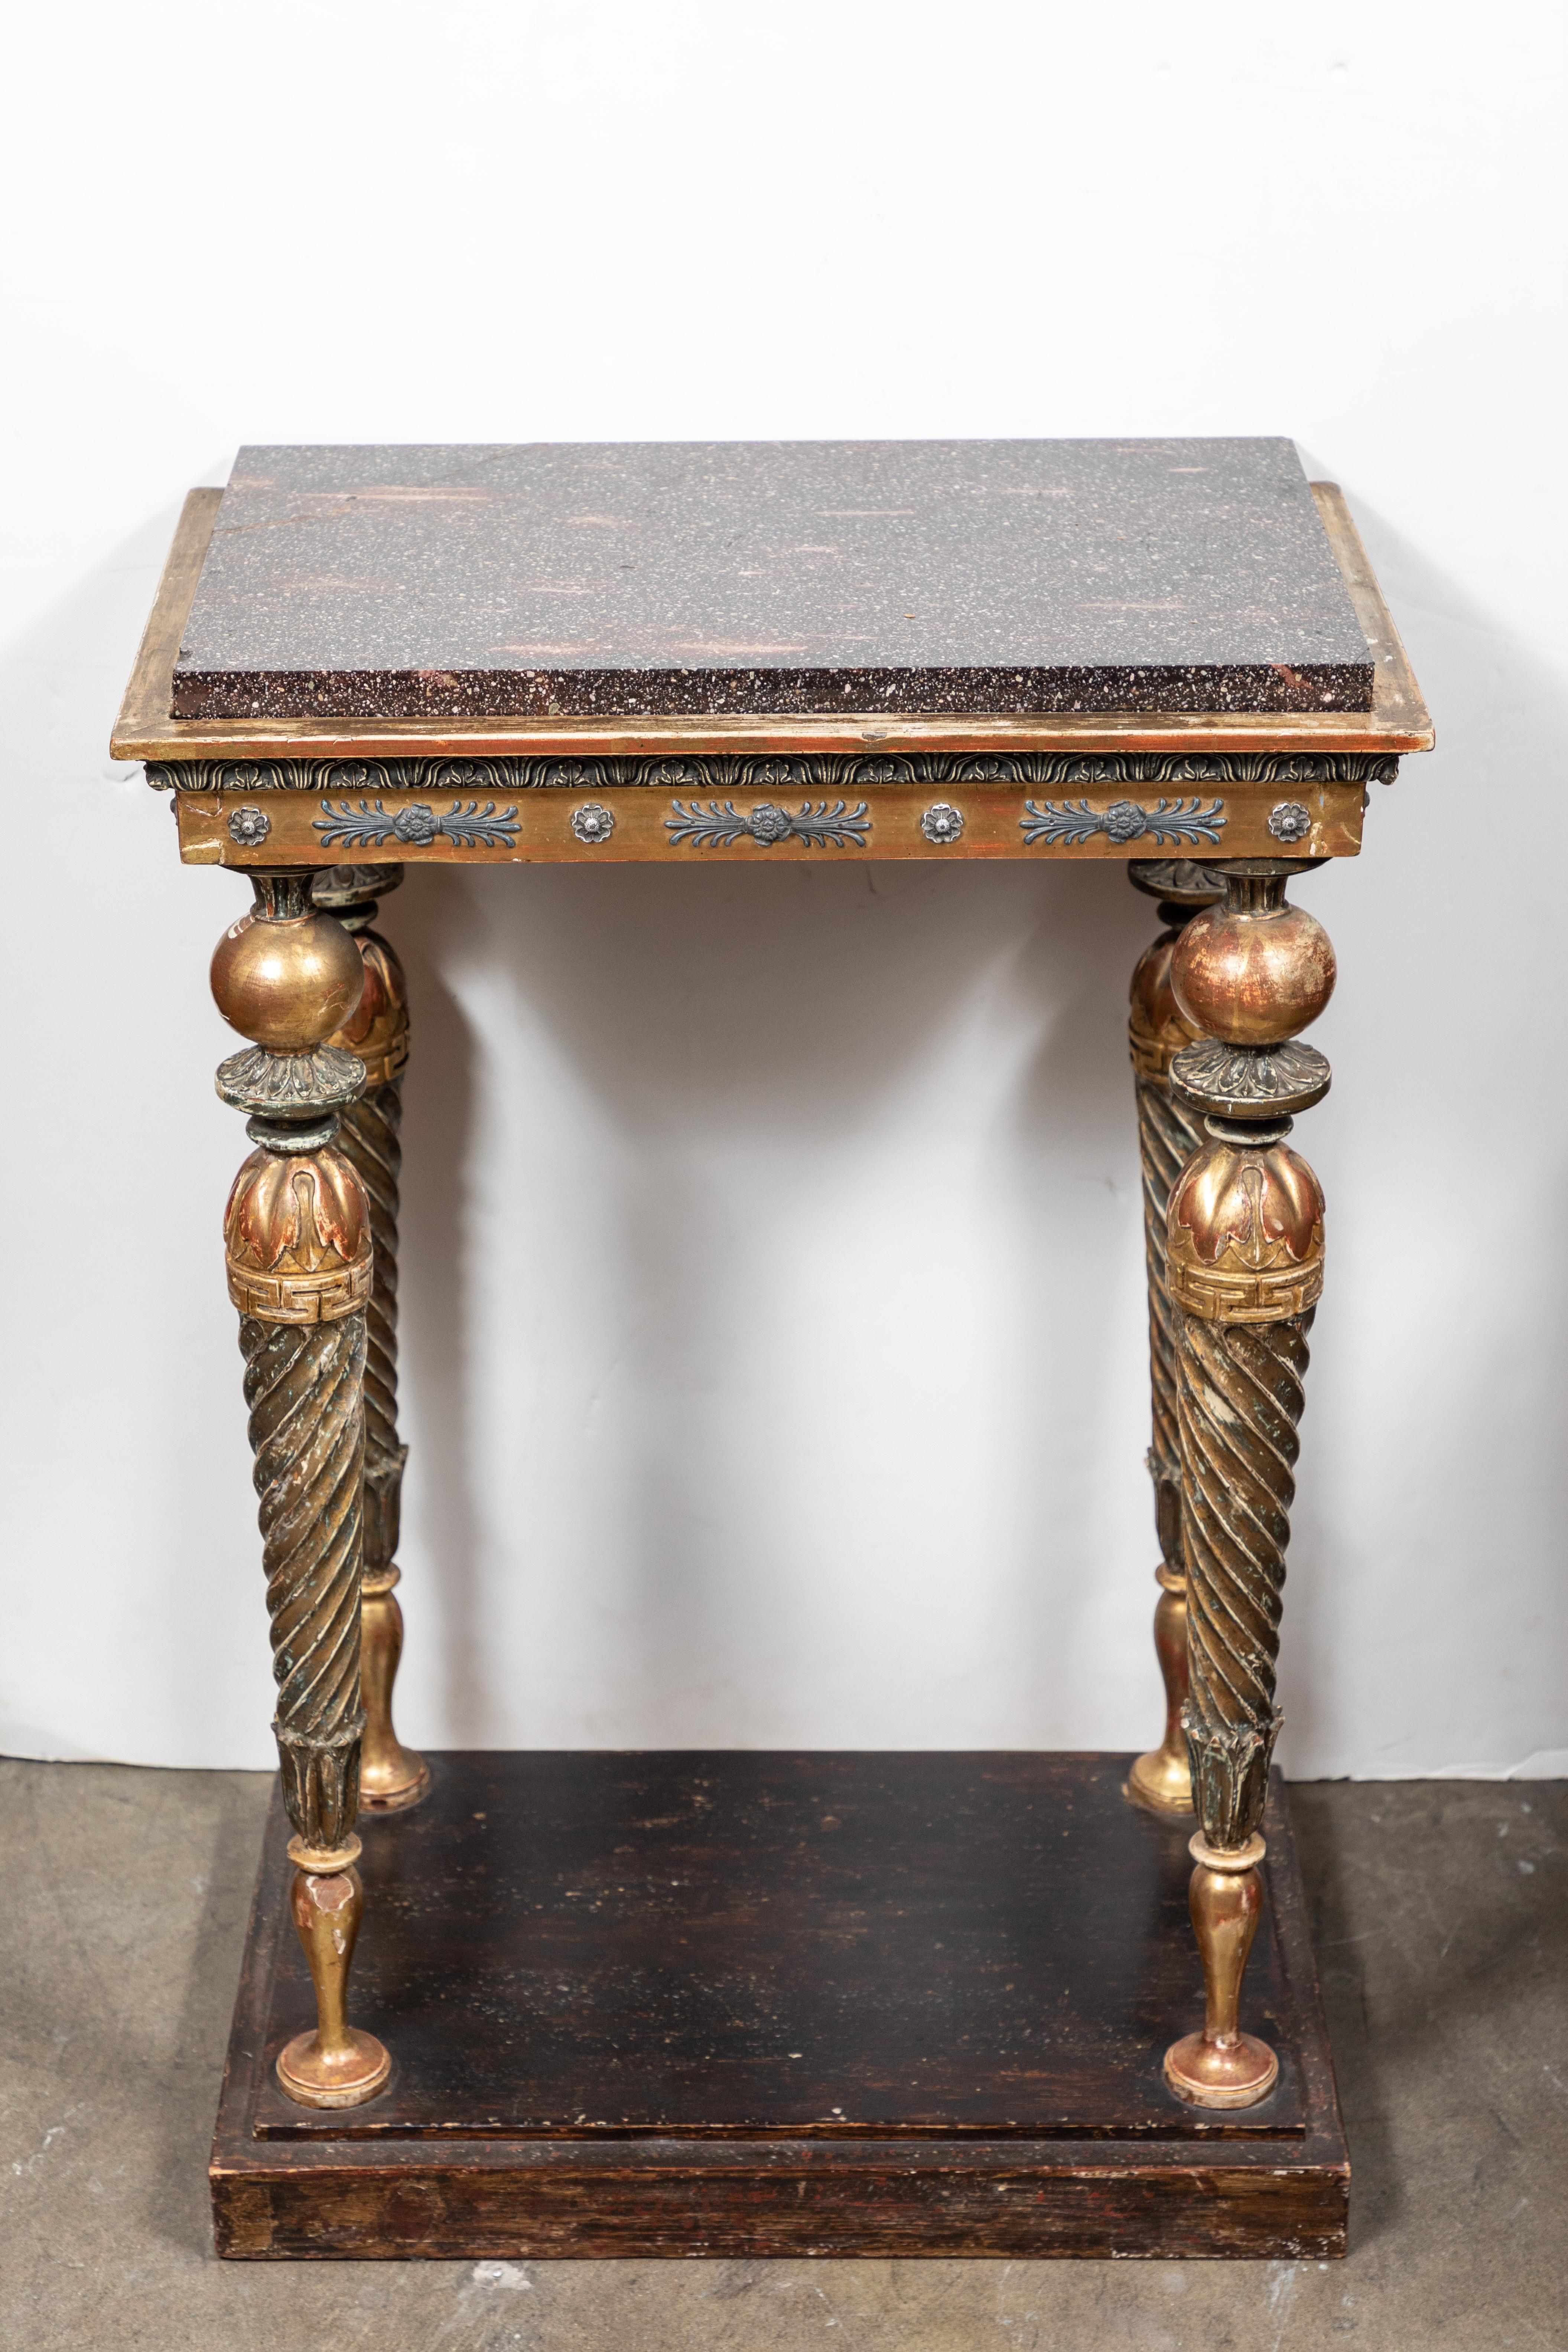 Magnifique table console à trois côtés, sculptée, peinte et dorée à la main, avec des pieds fuselés en spirale surmontés d'un tablier en relief et d'un plateau en porphyre d'origine.